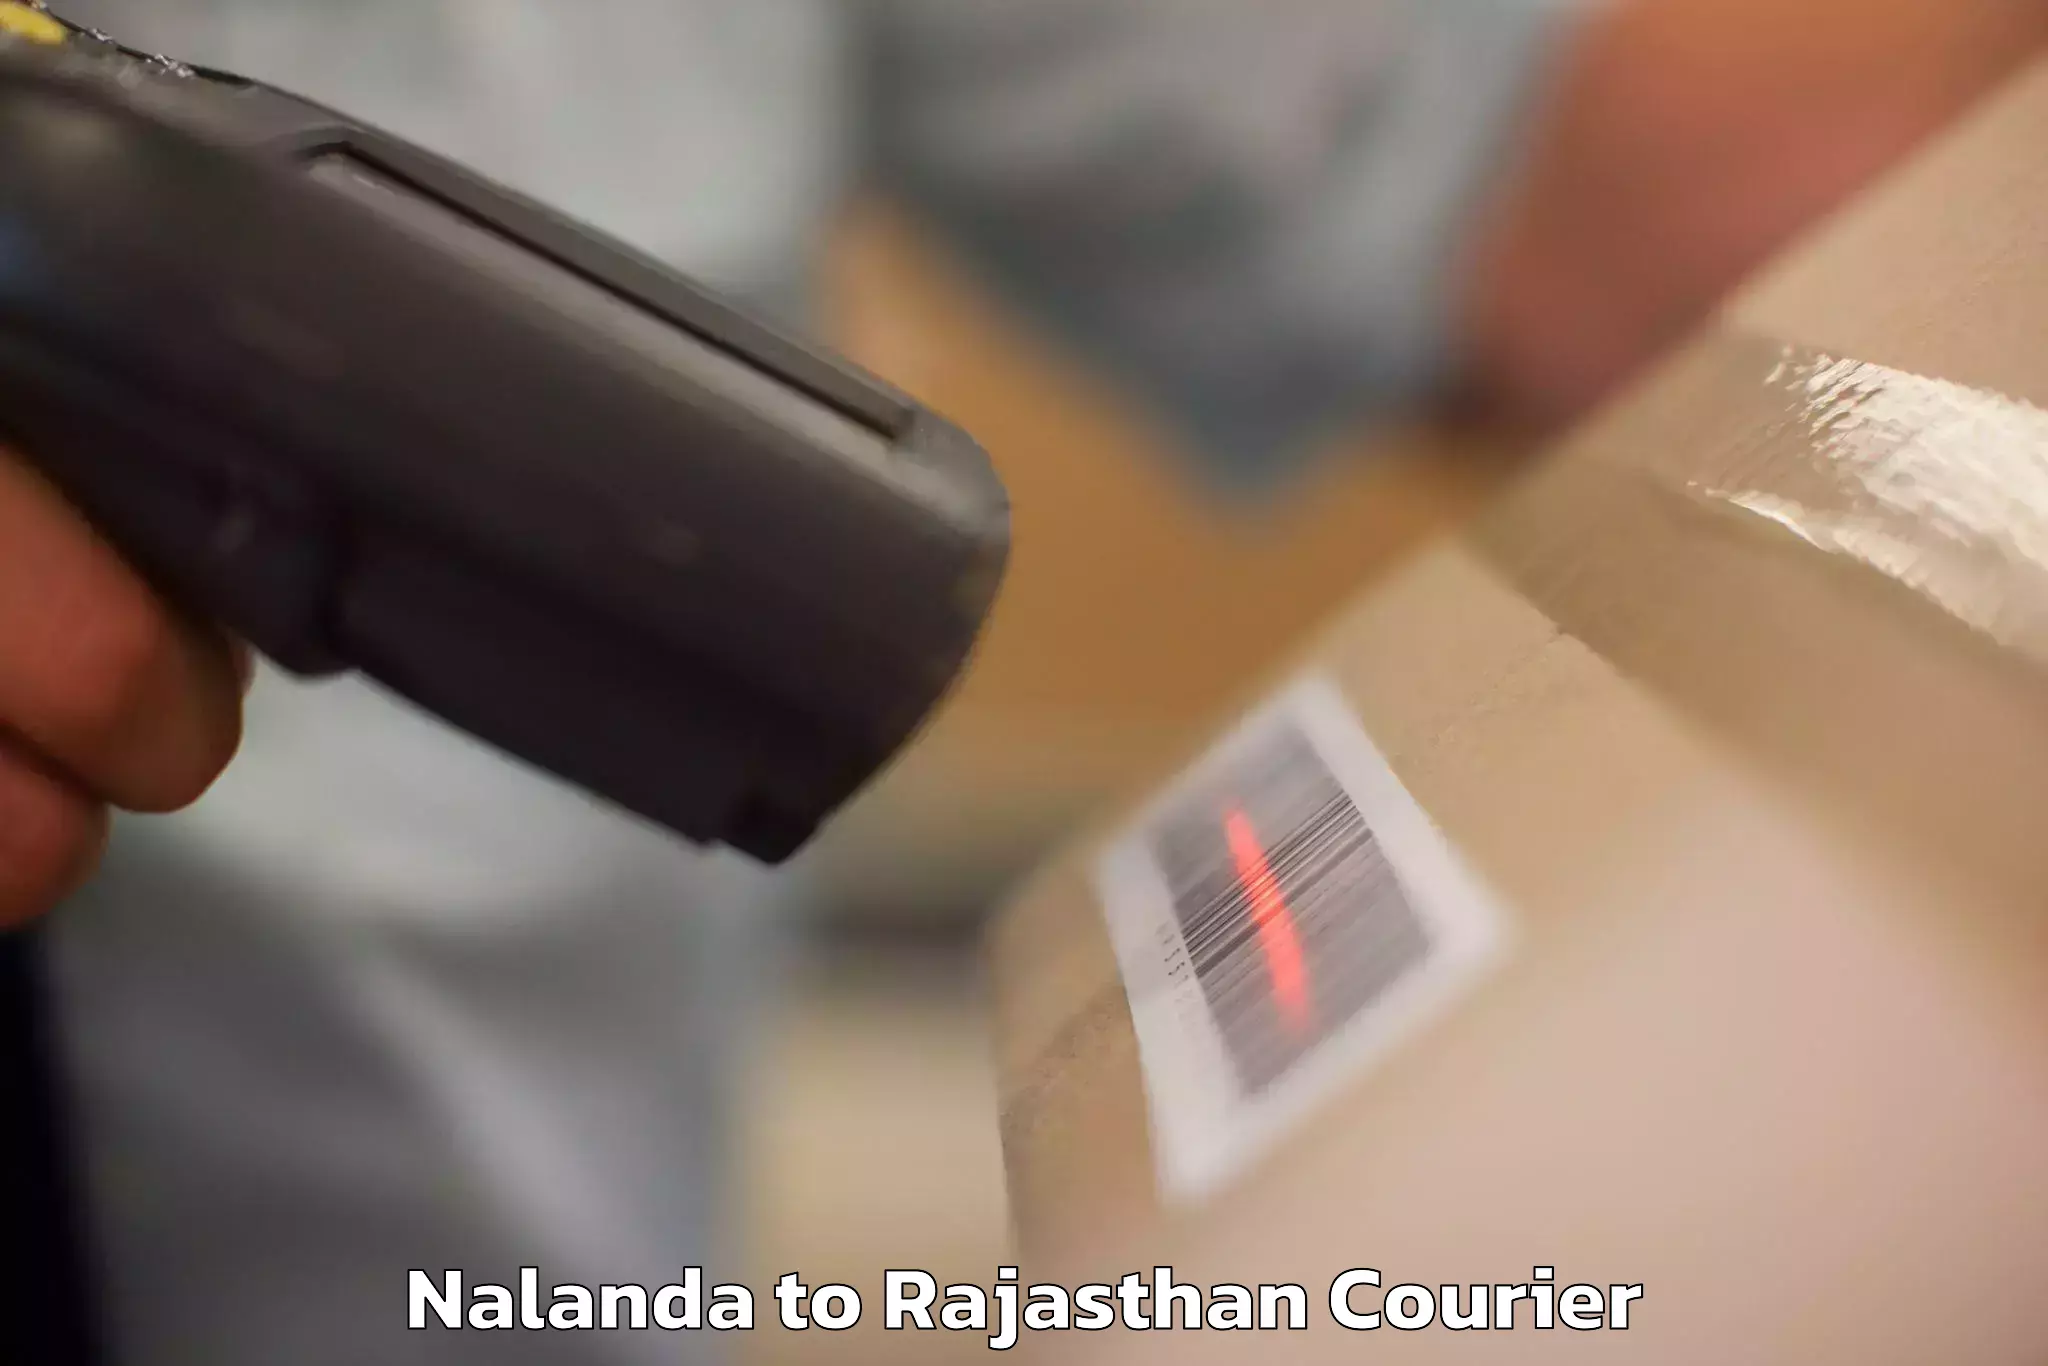 Luggage delivery app Nalanda to Banar